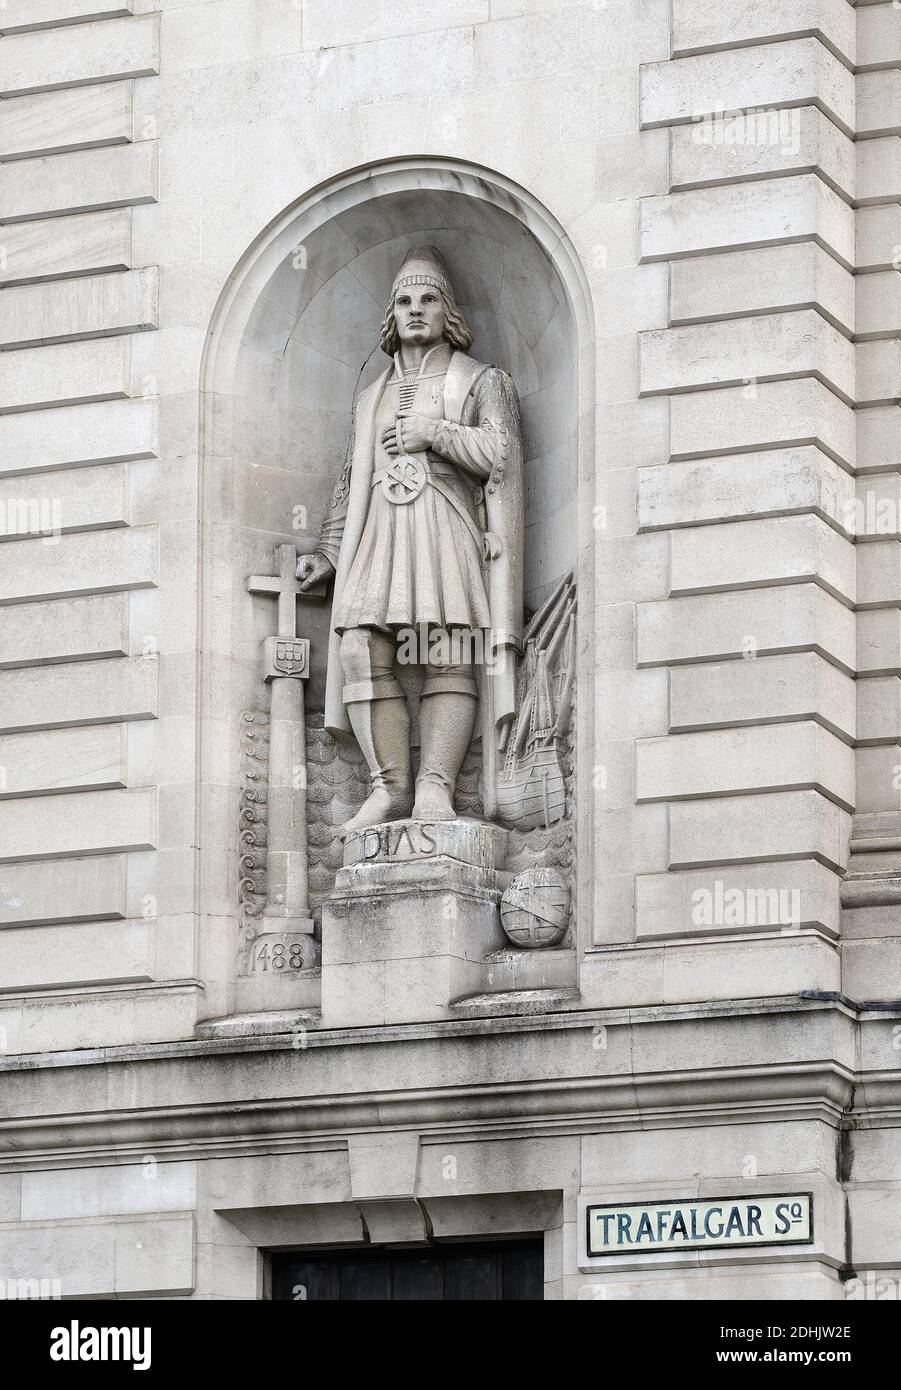 Londres, Angleterre, Royaume-Uni. Statue de Bartolomeu / Bartholemew Dias (explorateur portugais - premier européen connu pour avoir navigué autour de la Corne de l'Afrique, 1488 Banque D'Images